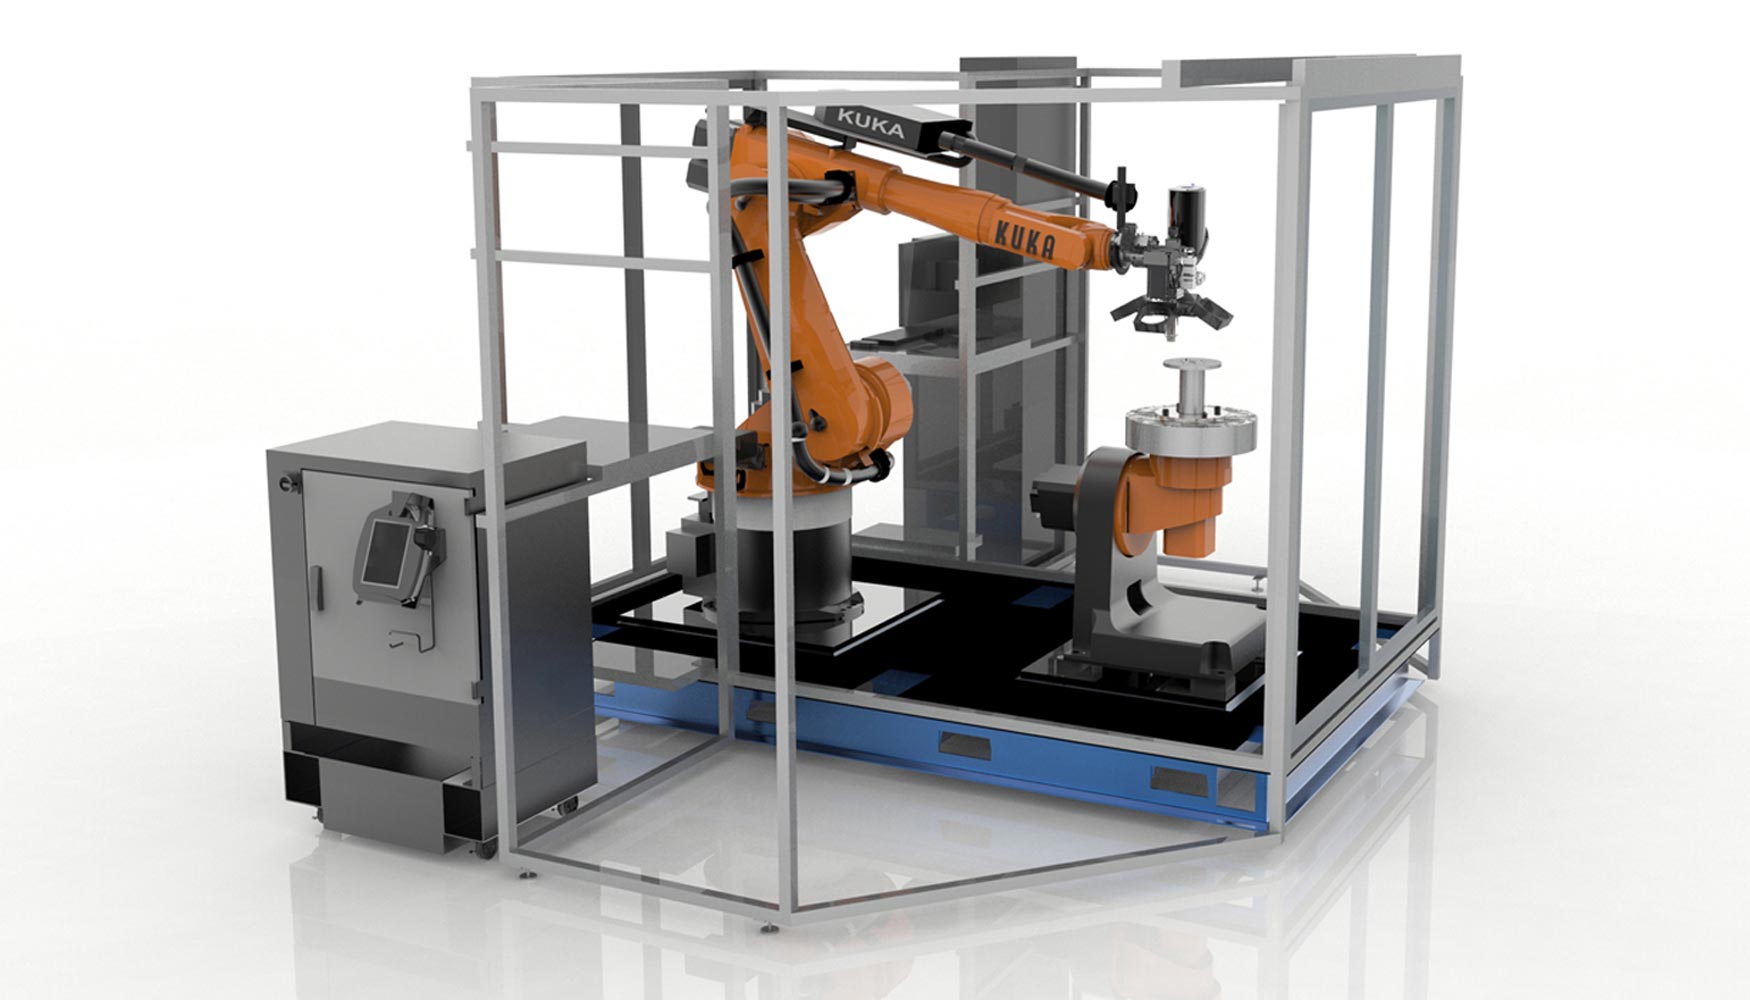 El Demostrador 3D Robotic Composite de Stratasys aborda la produccin automatizada de piezas desde una perspectiva hbrida...